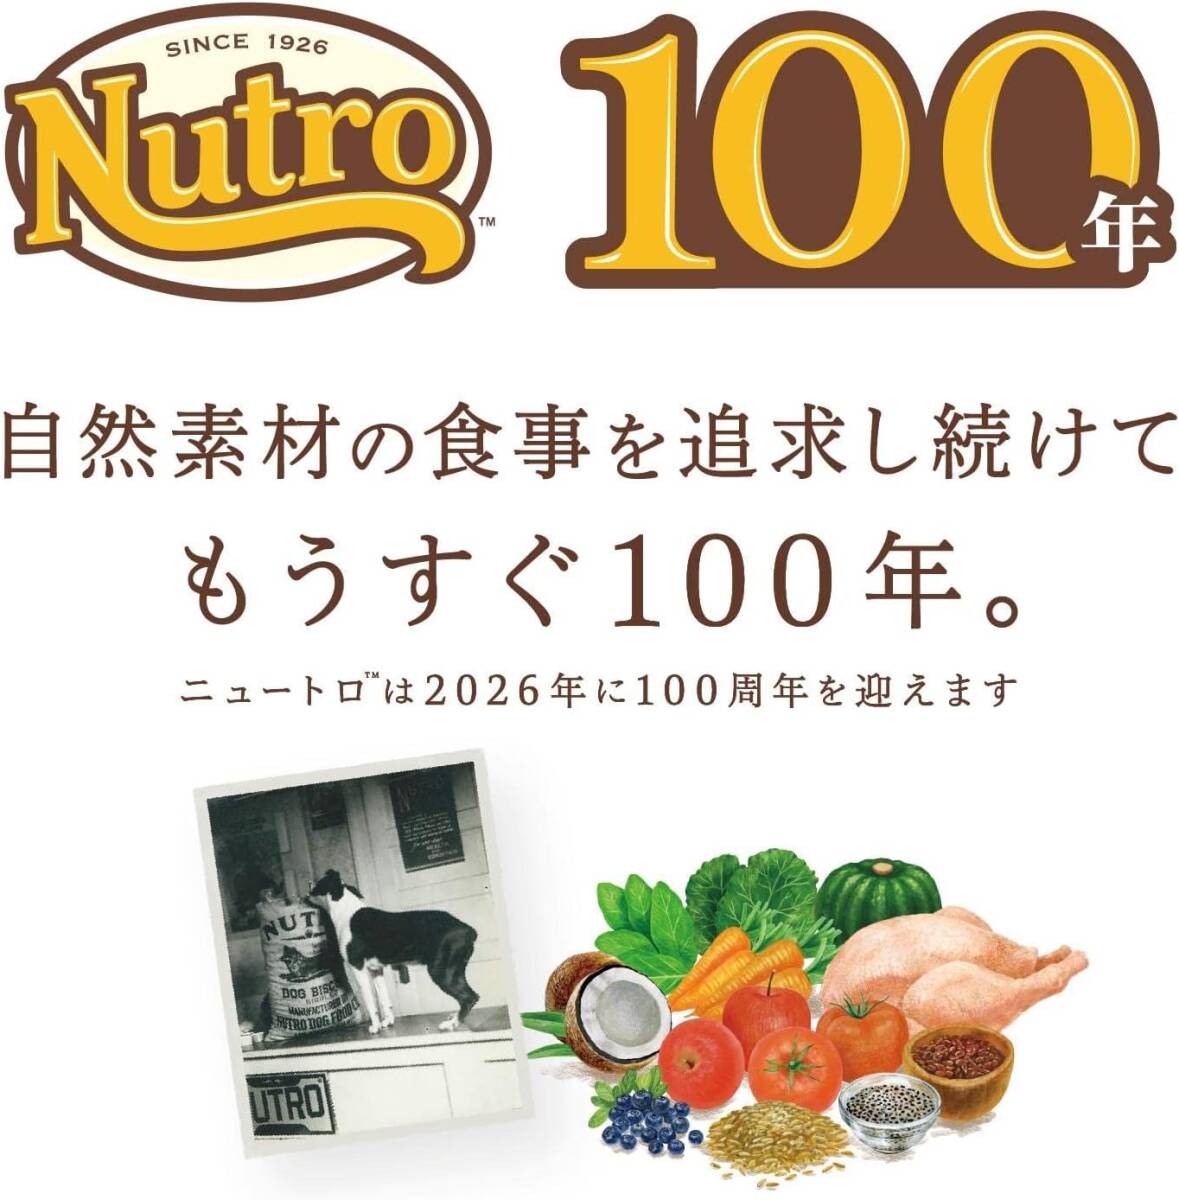 2kg Nutro новый Toro shu pre mo миниатюрный собака ~ для маленьких собак для взрослой собаки земля средний море. рецепт Ram 2kg корм для собак серый n свободный 